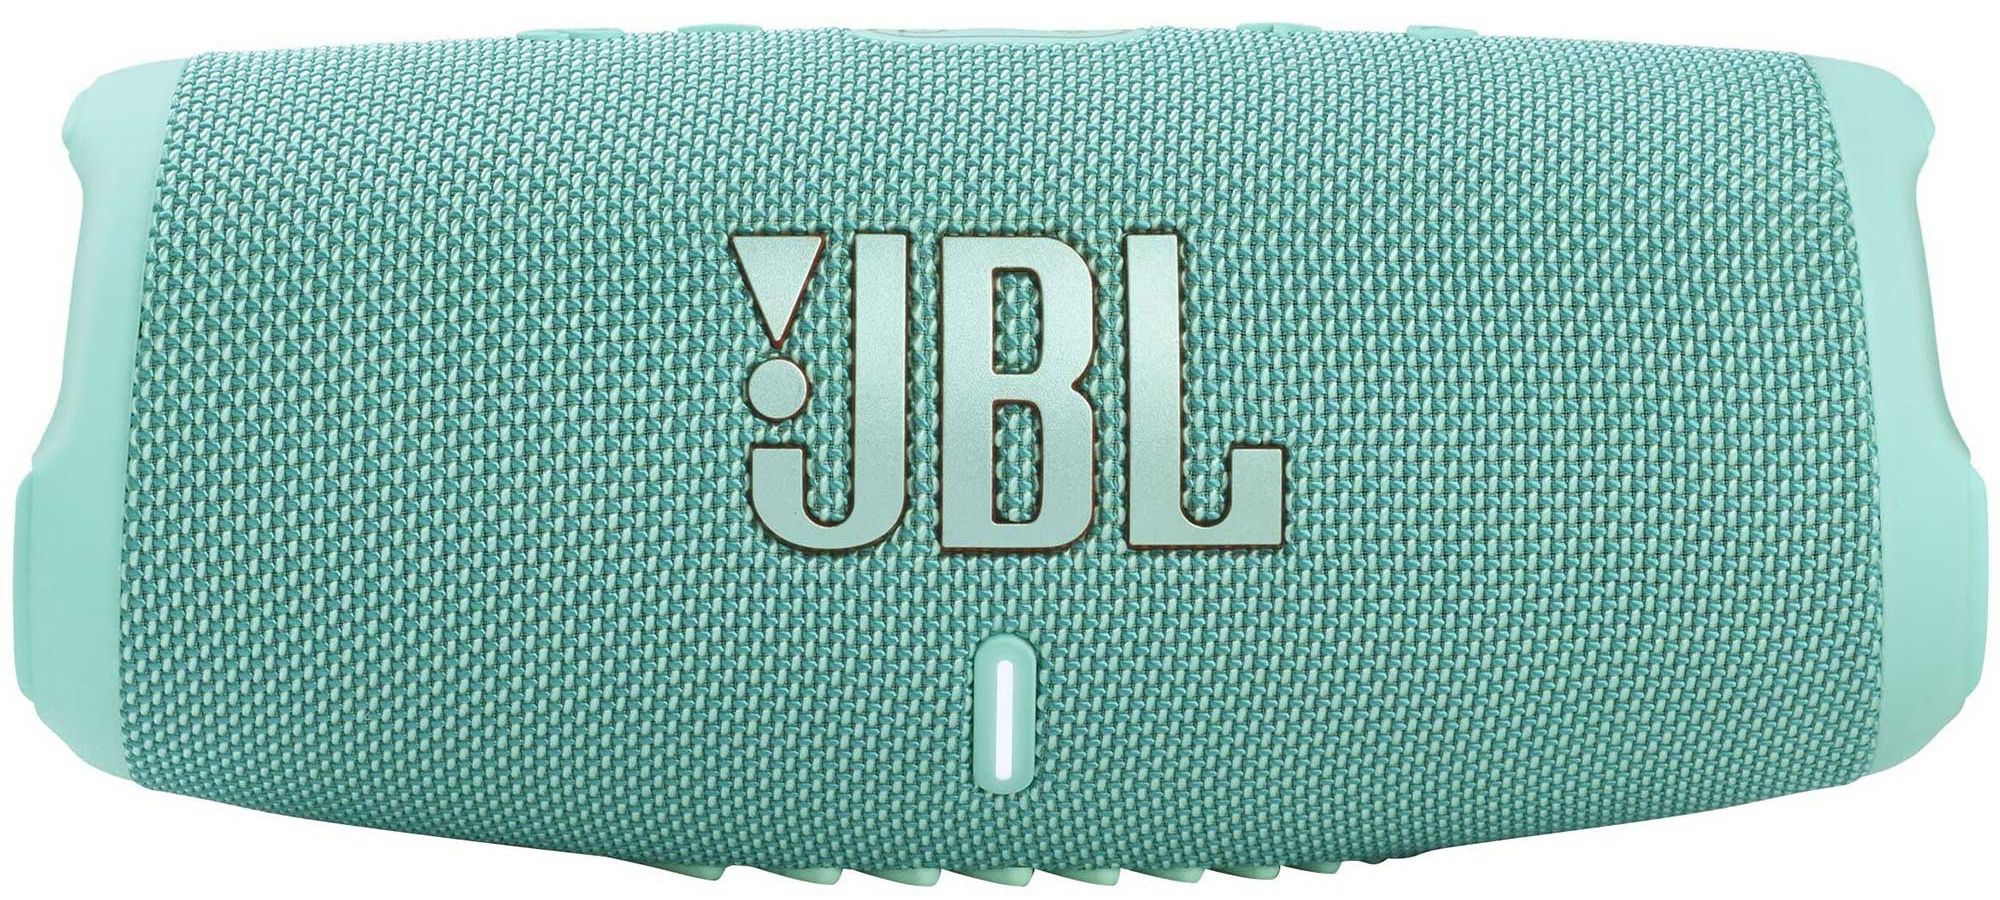 Портативная акустика JBL Charge 5 Teal портативная акустика jbl charge 3 20 вт teal